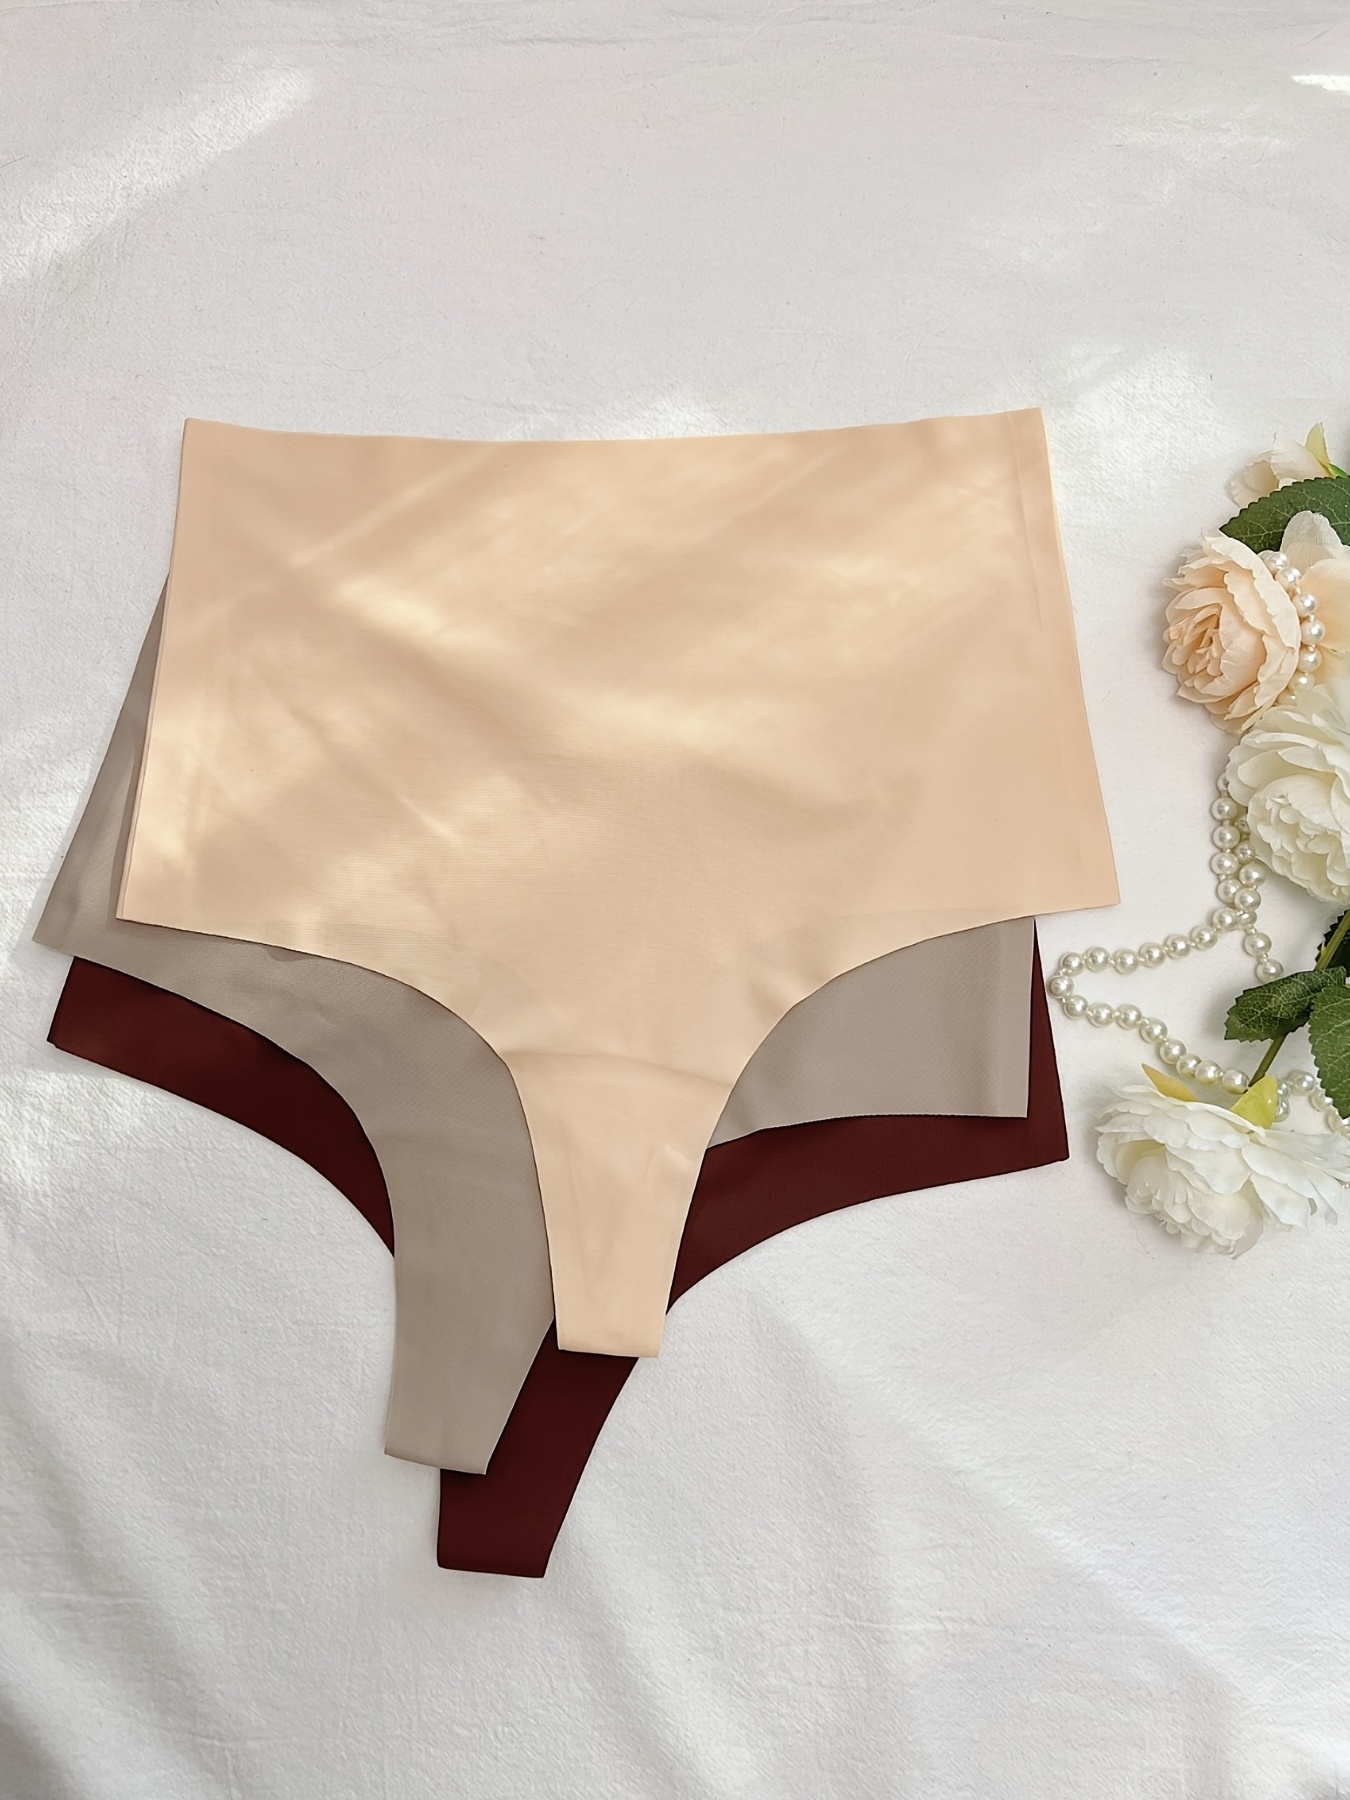 3Pcs Cotton Panties Women's Underwear Seamless Comfort Briefs High